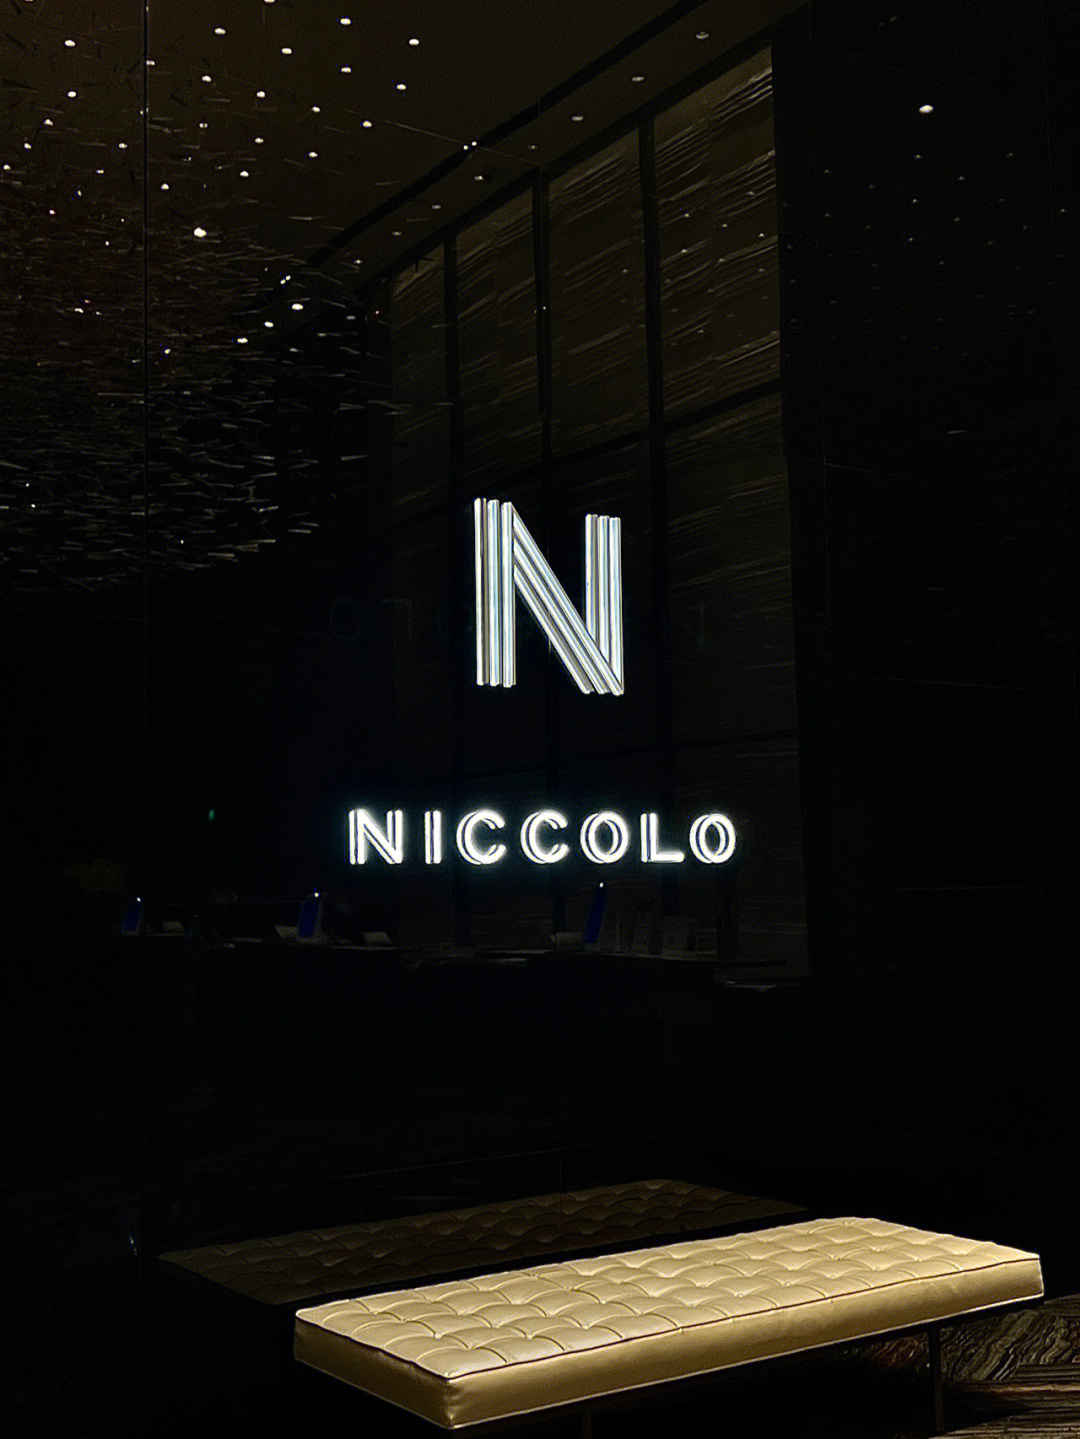 长沙niccolo酒店图片